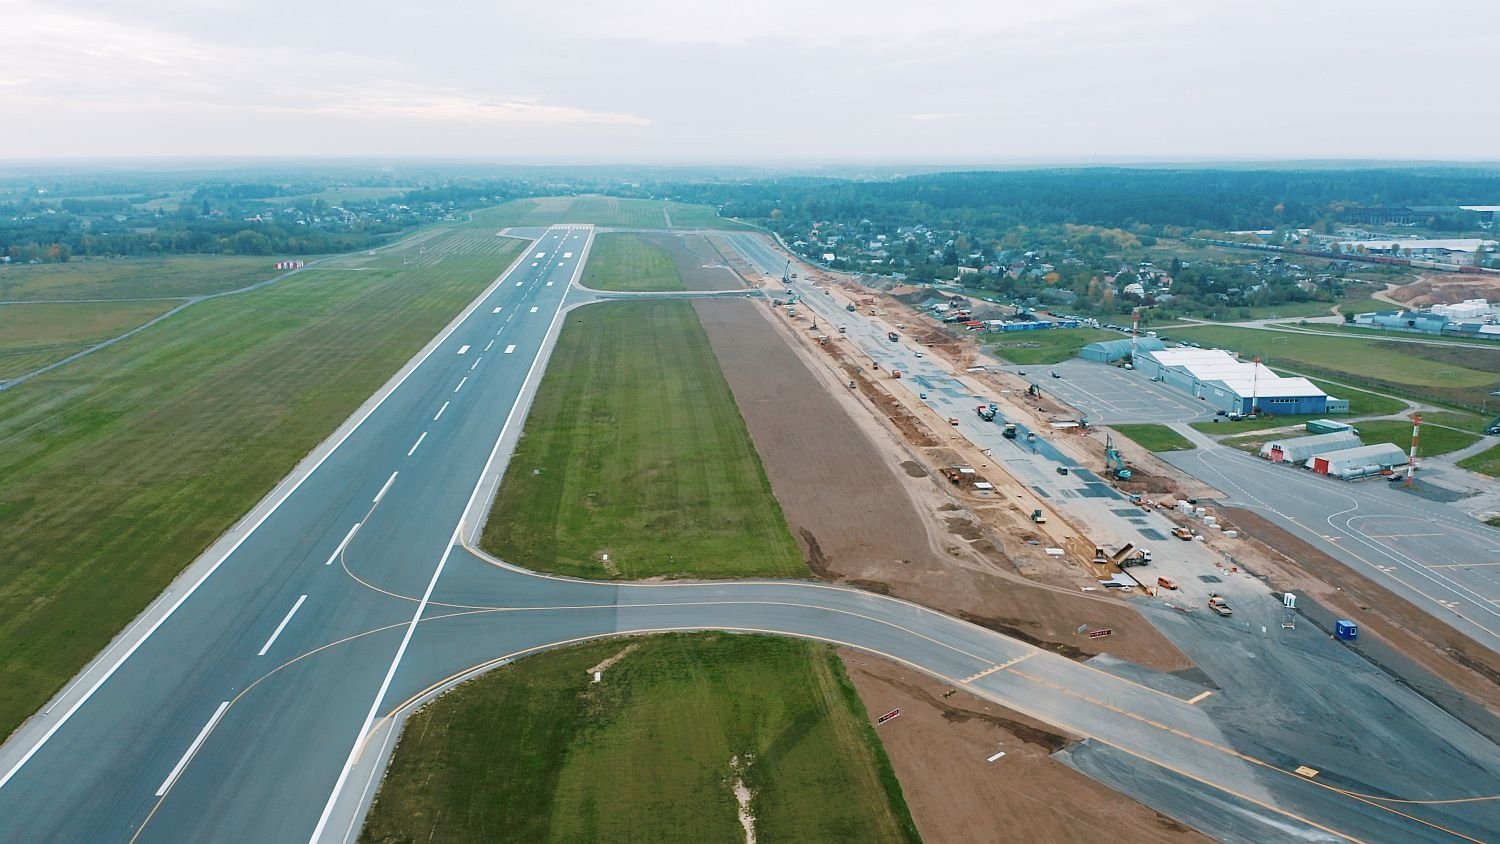 Didelės apimties Vilniaus oro uosto rekonstrukcija eina į pabaigą